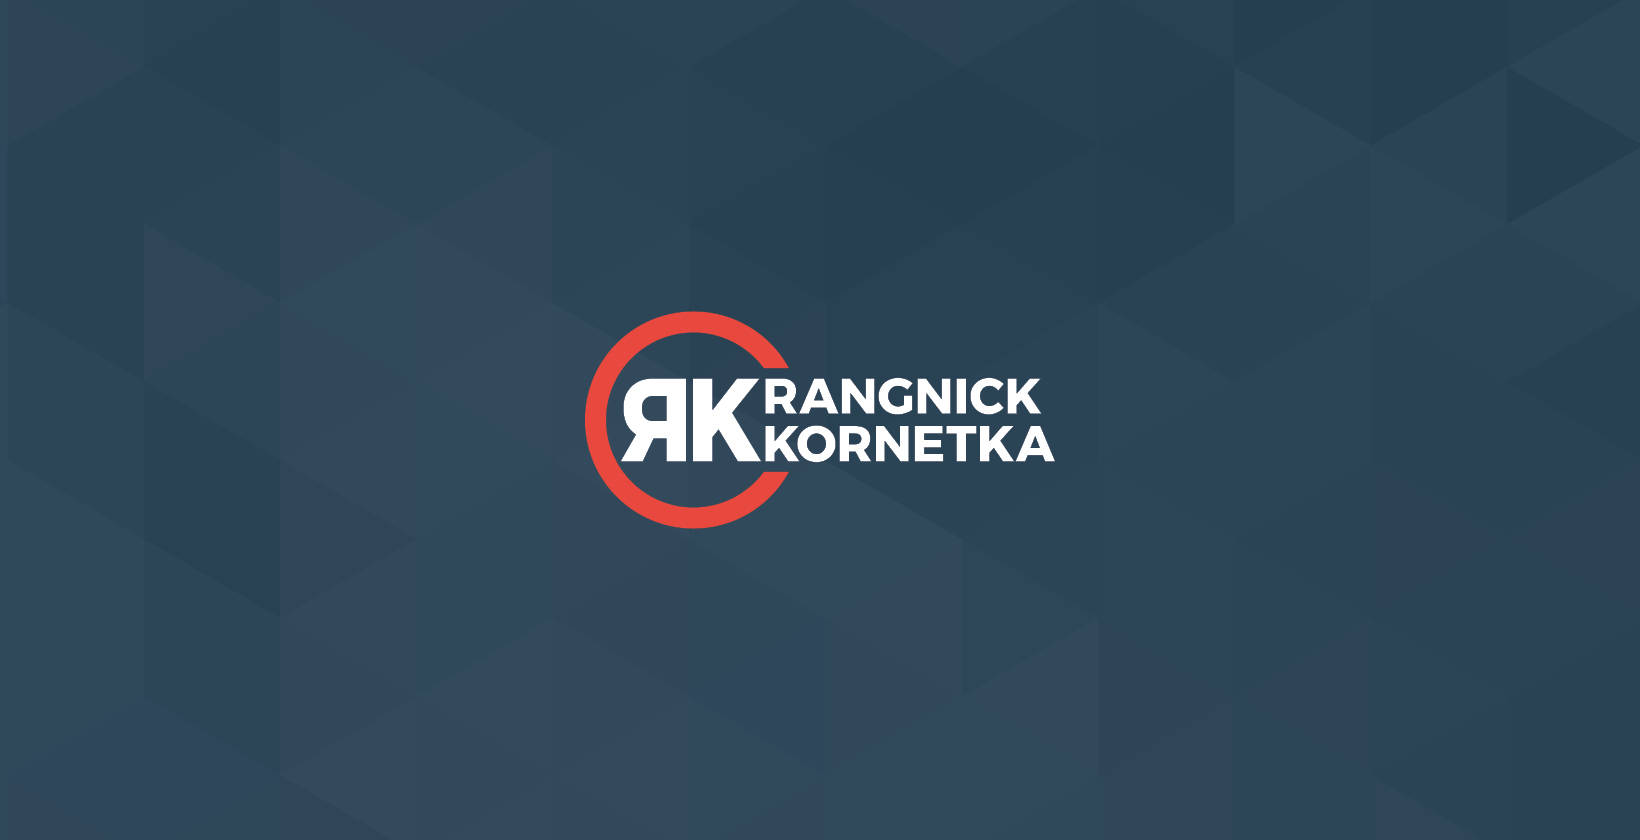 Logoentwicklung für Rangnick & Kornetka Consulting GmbH